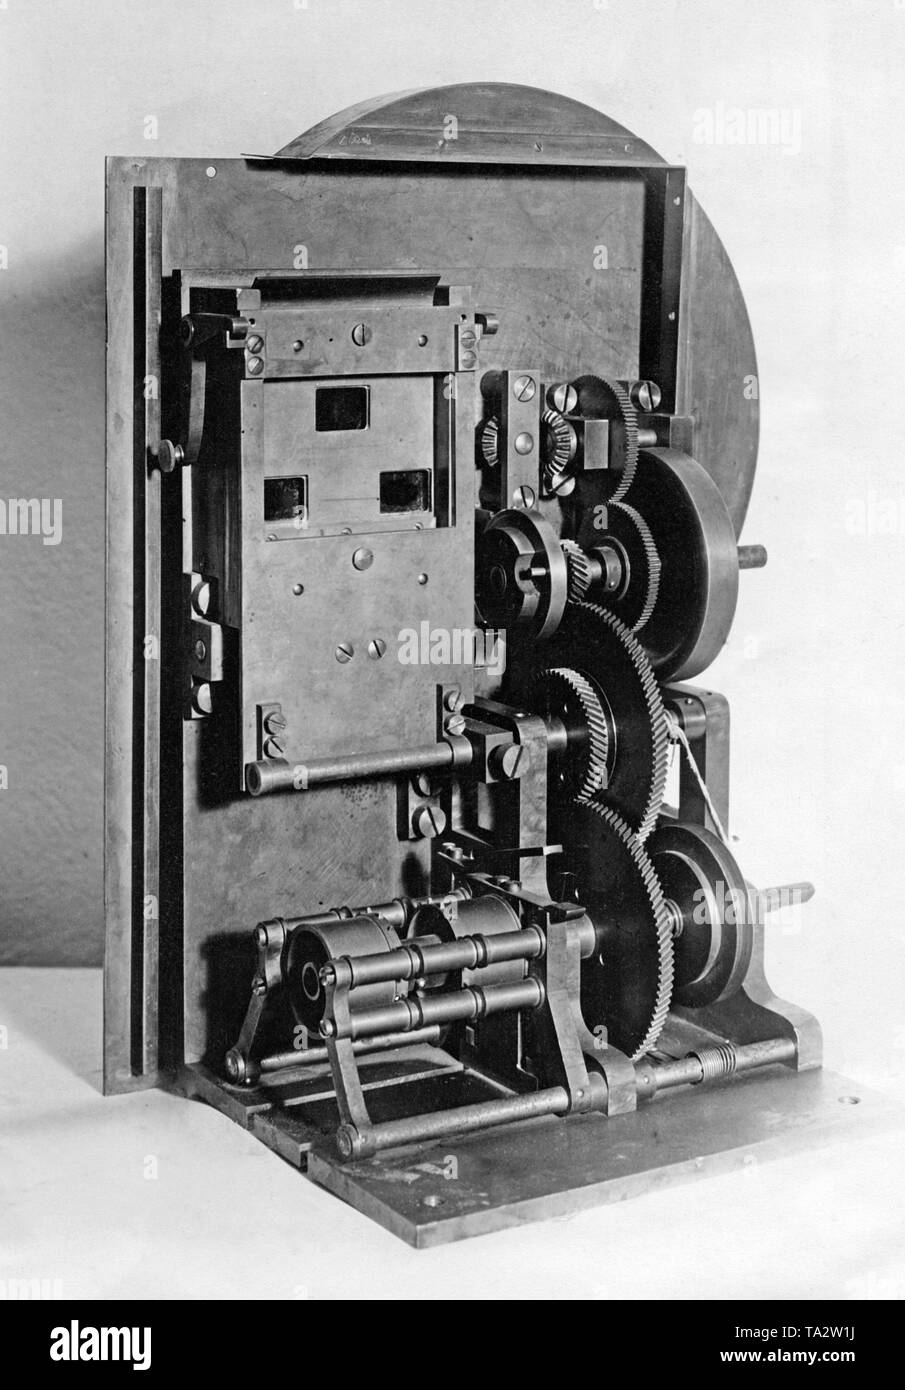 L'Oskar Messter pionnier du film a donné le Deutsches Museum le premier appareil d'enregistrement pour les films couleur, dont les trois objectifs admis l'enregistrement simultané de trois couleurs. Banque D'Images